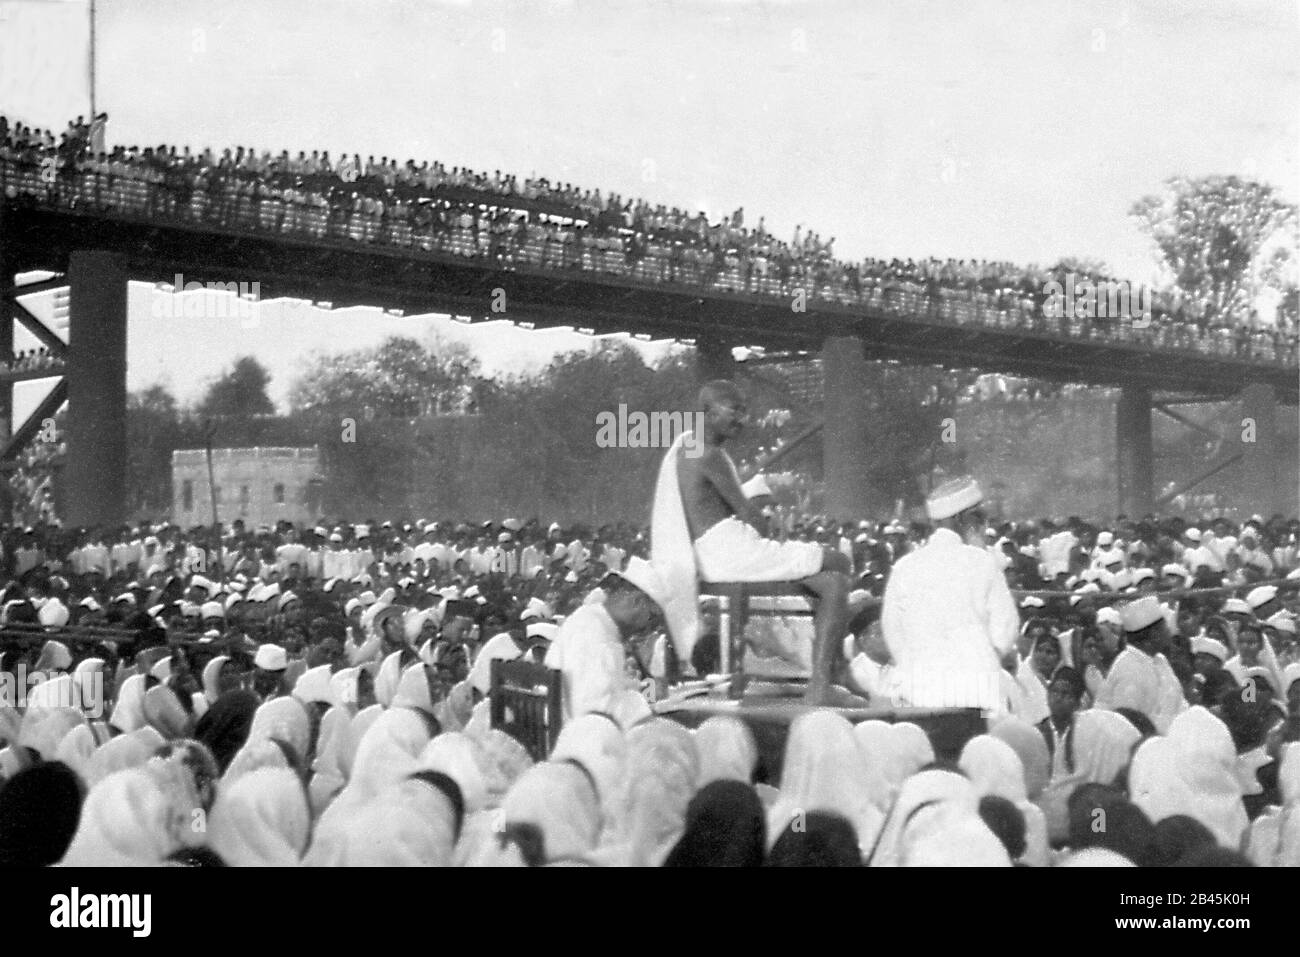 Mahatma Gandhi prononçant un discours à la foule dans le lit sec de la rivière Sabarmati, Ahmedabad, Gujarat, Inde, Asie, 11 mars 1931, ancienne image vintage 1900s Banque D'Images